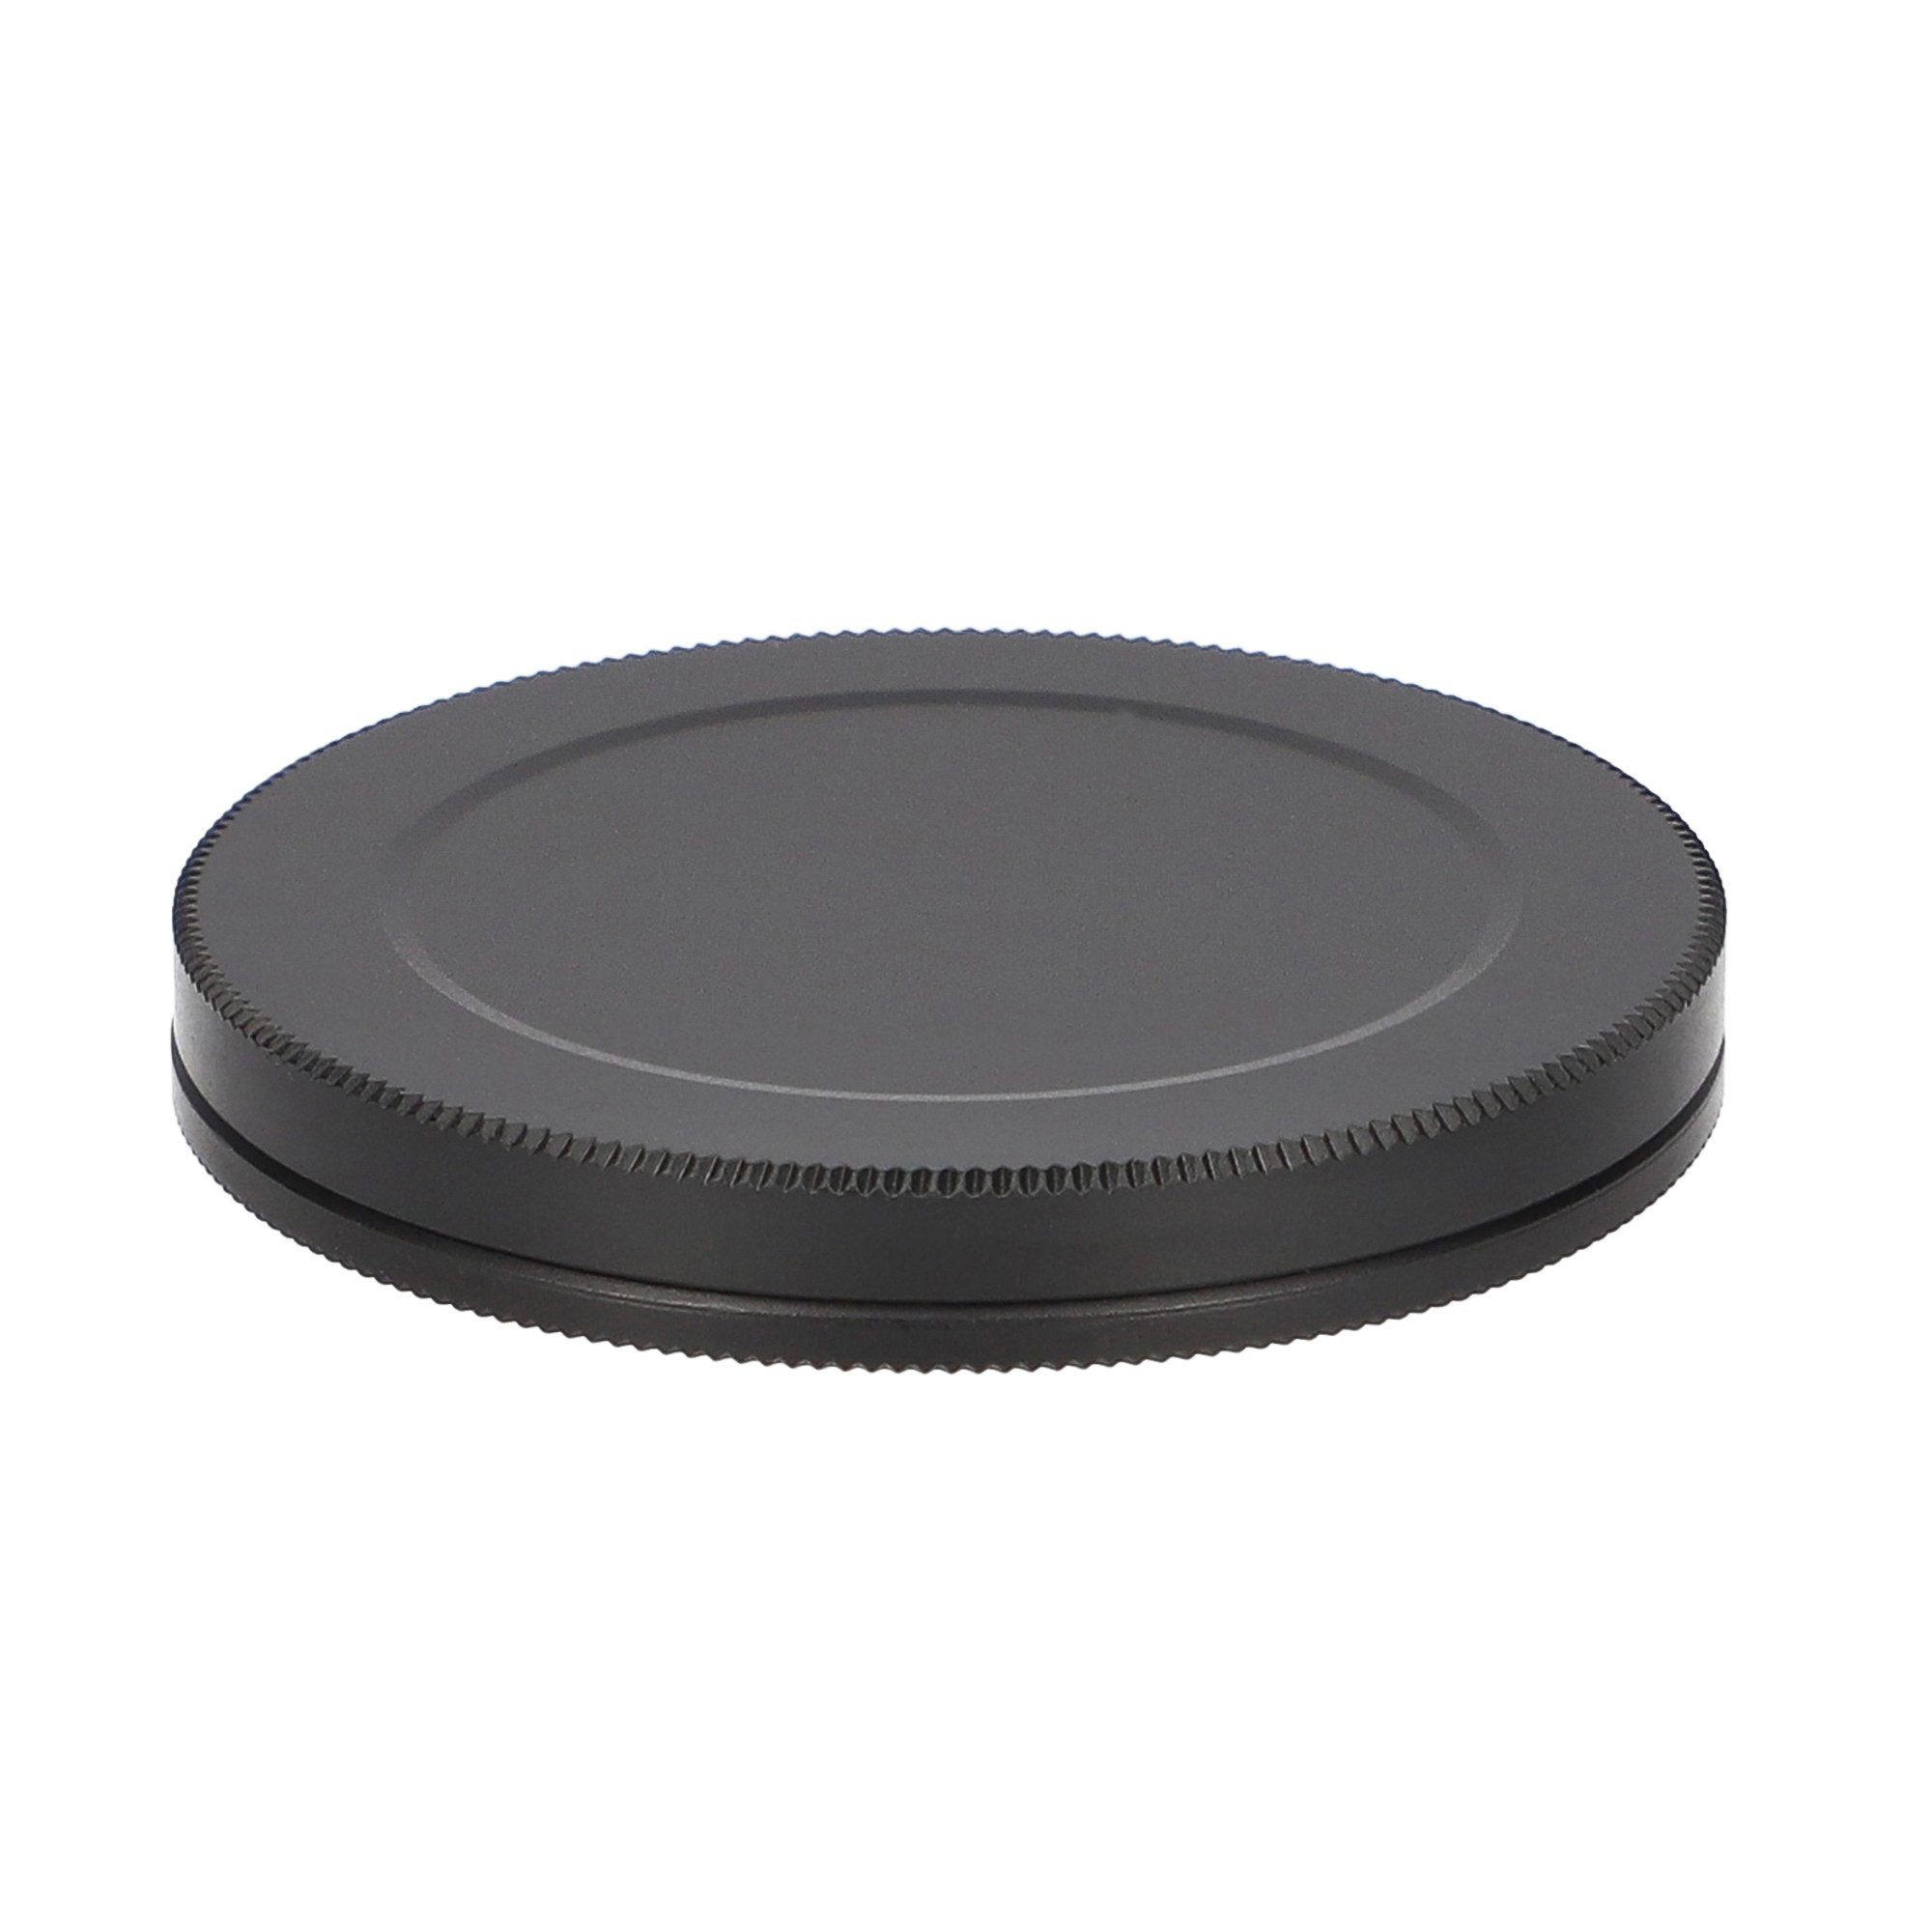 ayex Objektivdeckel Schraub-Filterkappen aus Aluminium für Objektivfilter mit 52mm Gewinde